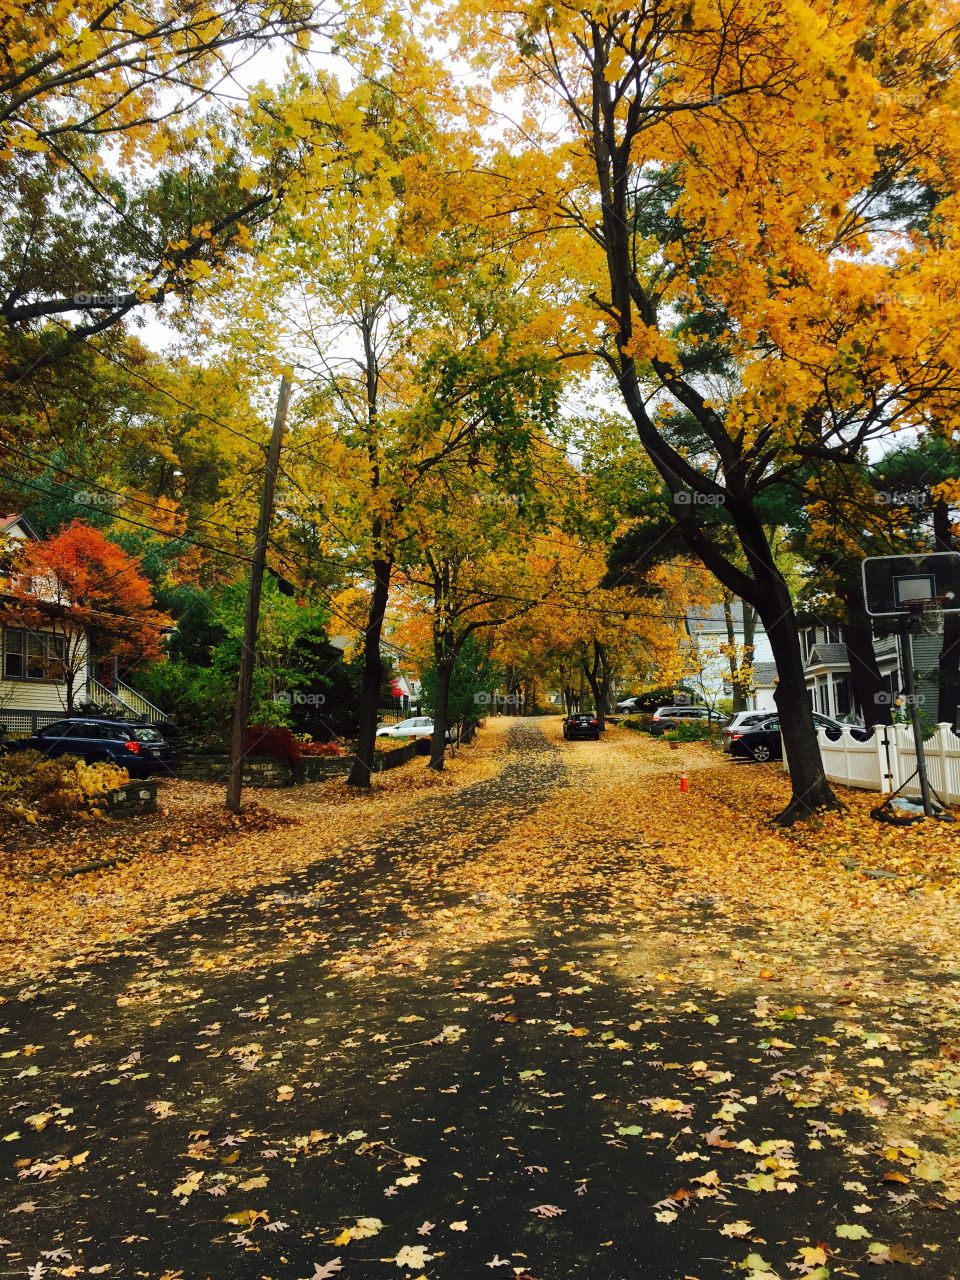 Fall in Boston